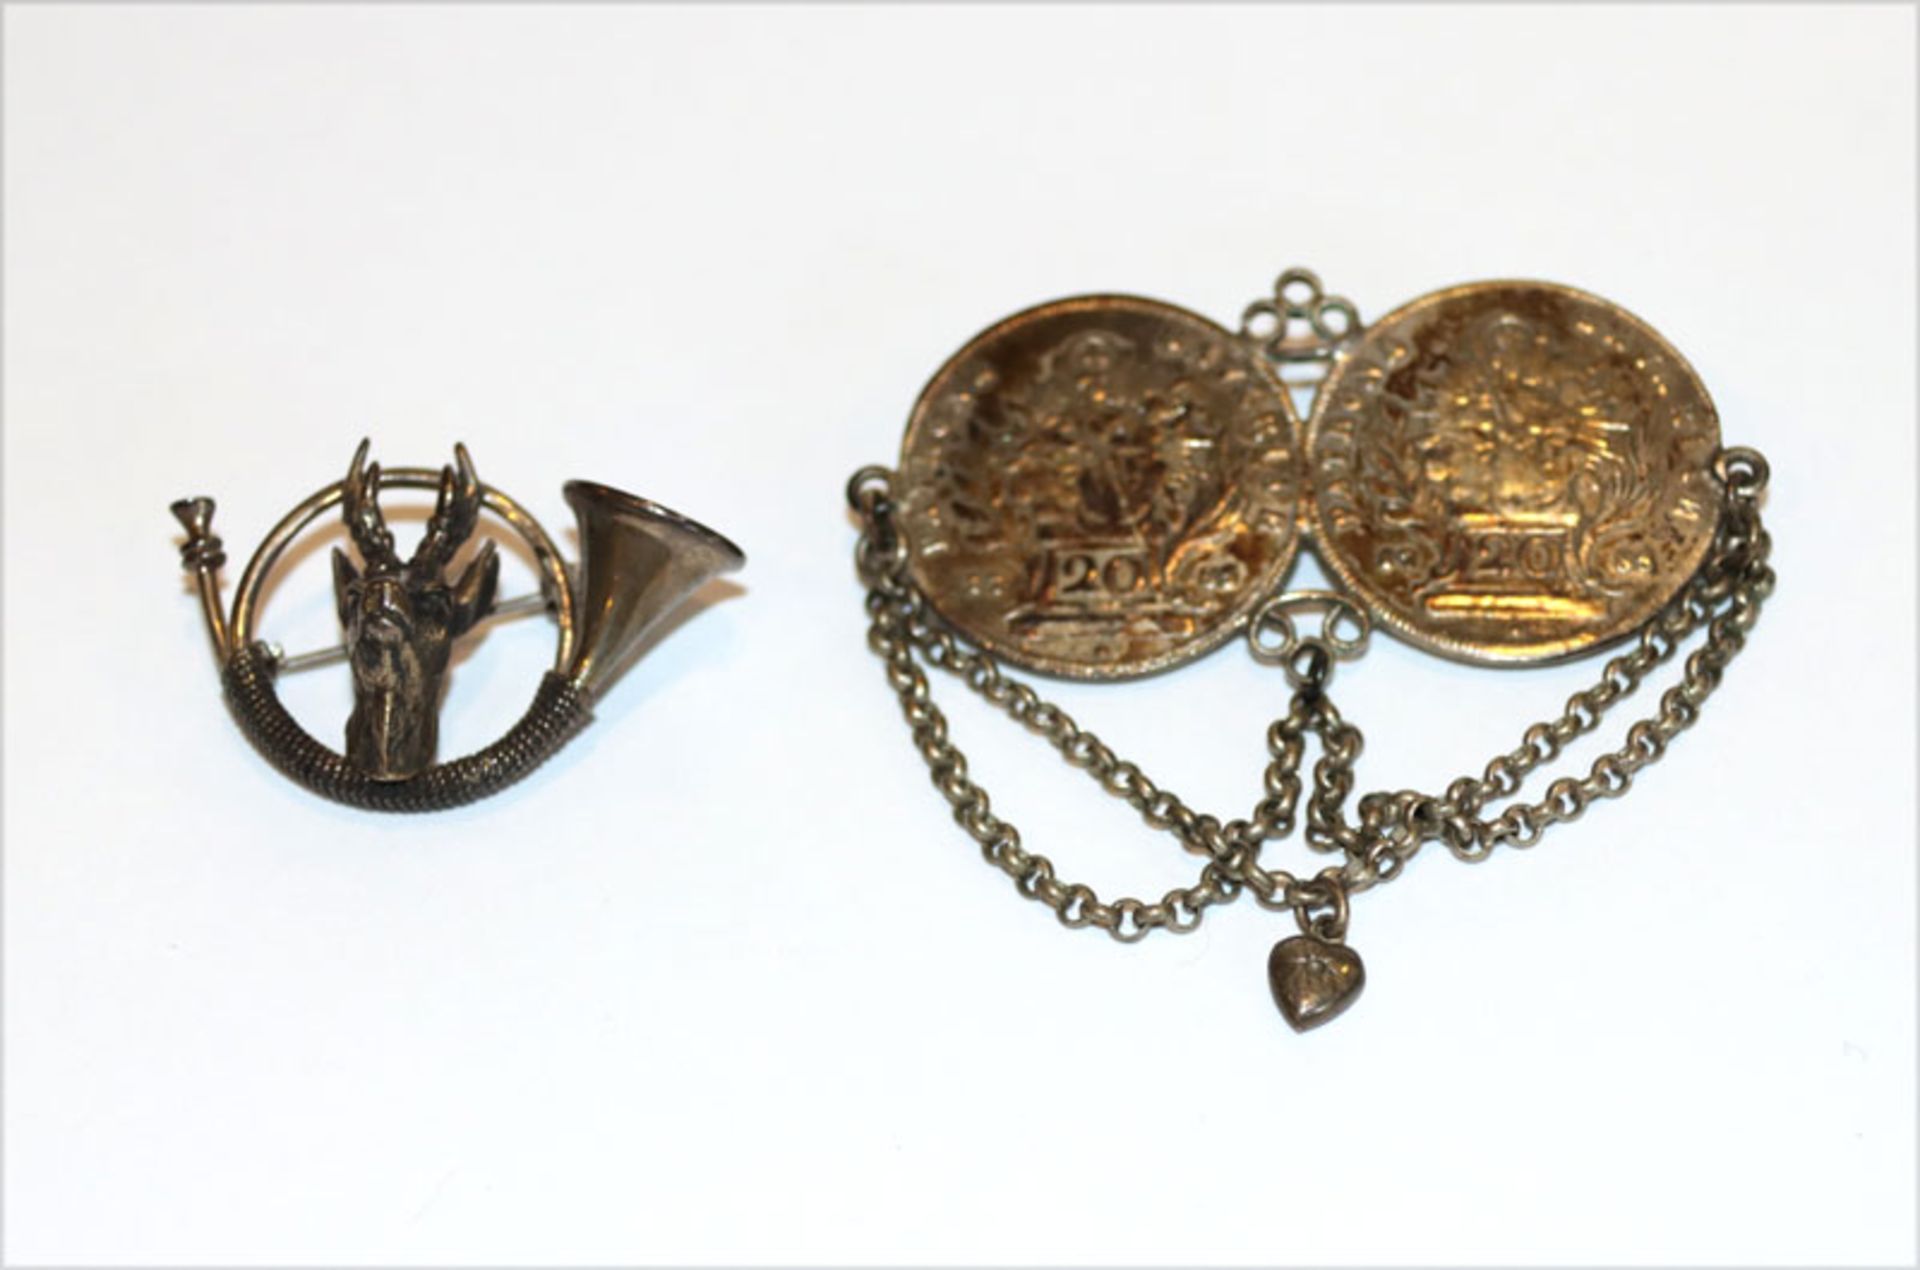 Silber Trachtenschmuck: Brosche in Form eines Jagdhorns mit plastischem Rehbockkopf, B 4 cm, und